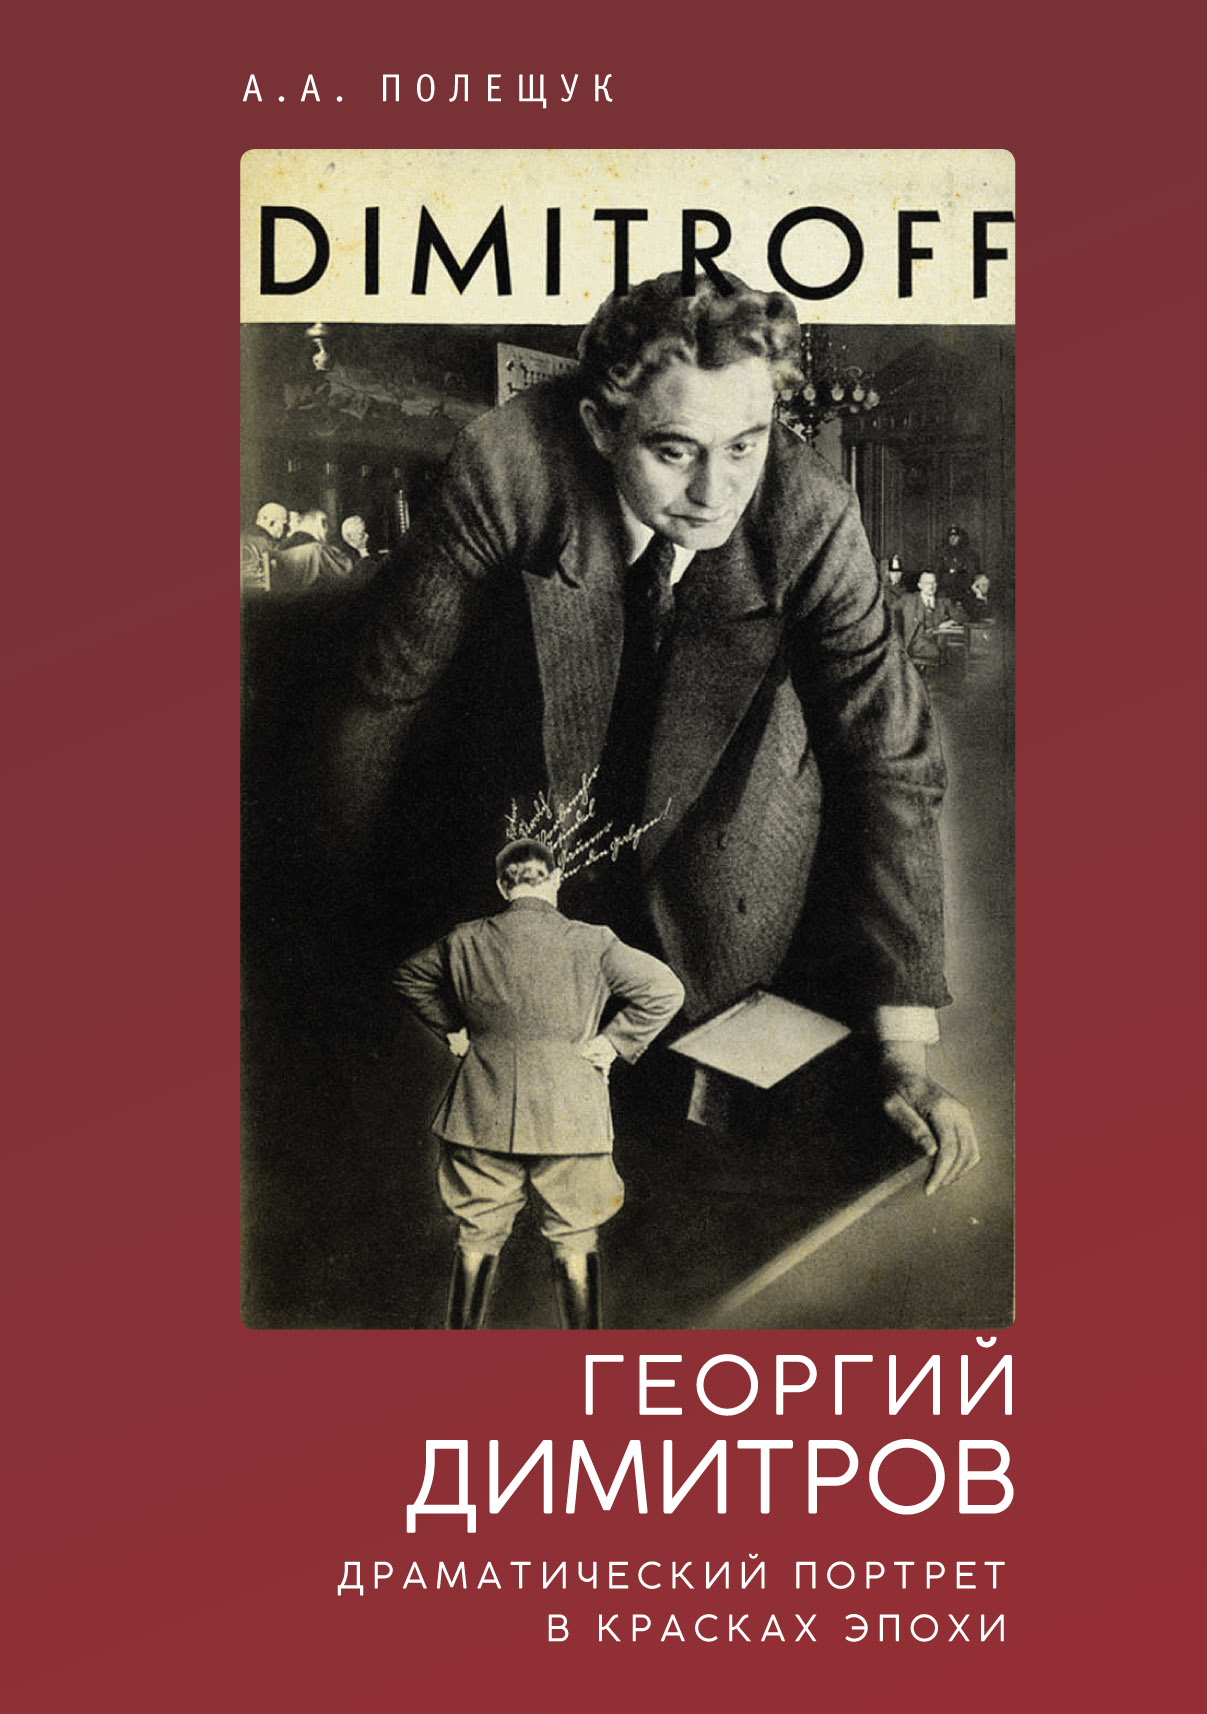 Георгий Димитров: драматический портрет в красках эпохи